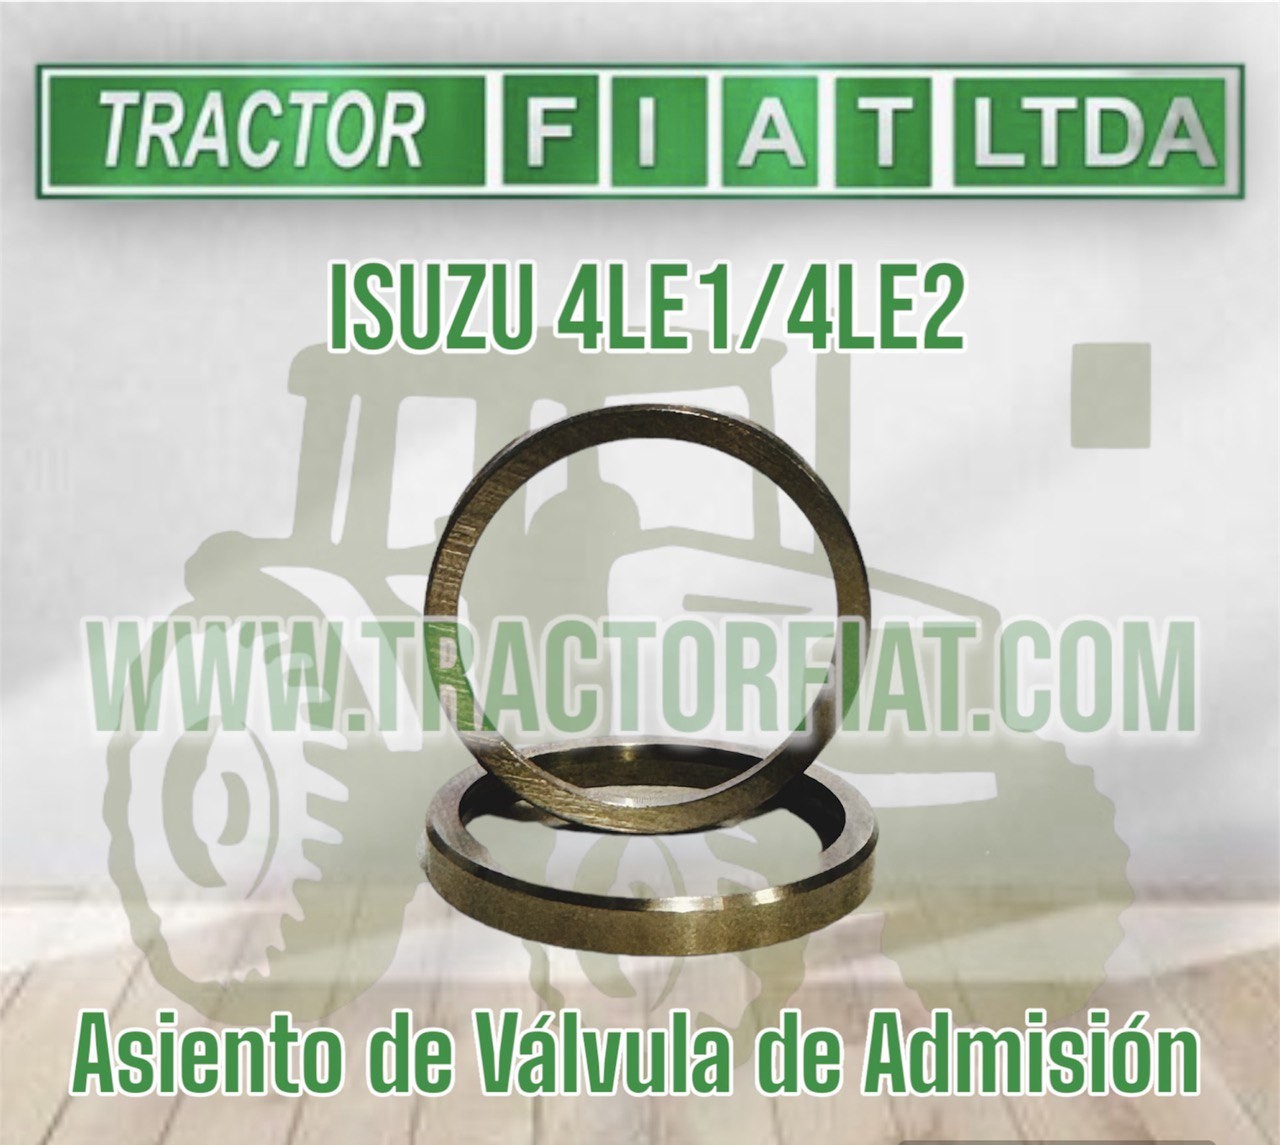 ASIENTOS DE VALVULA DE ADMISION - MOTOR ISUZU 4LE1/4LE2